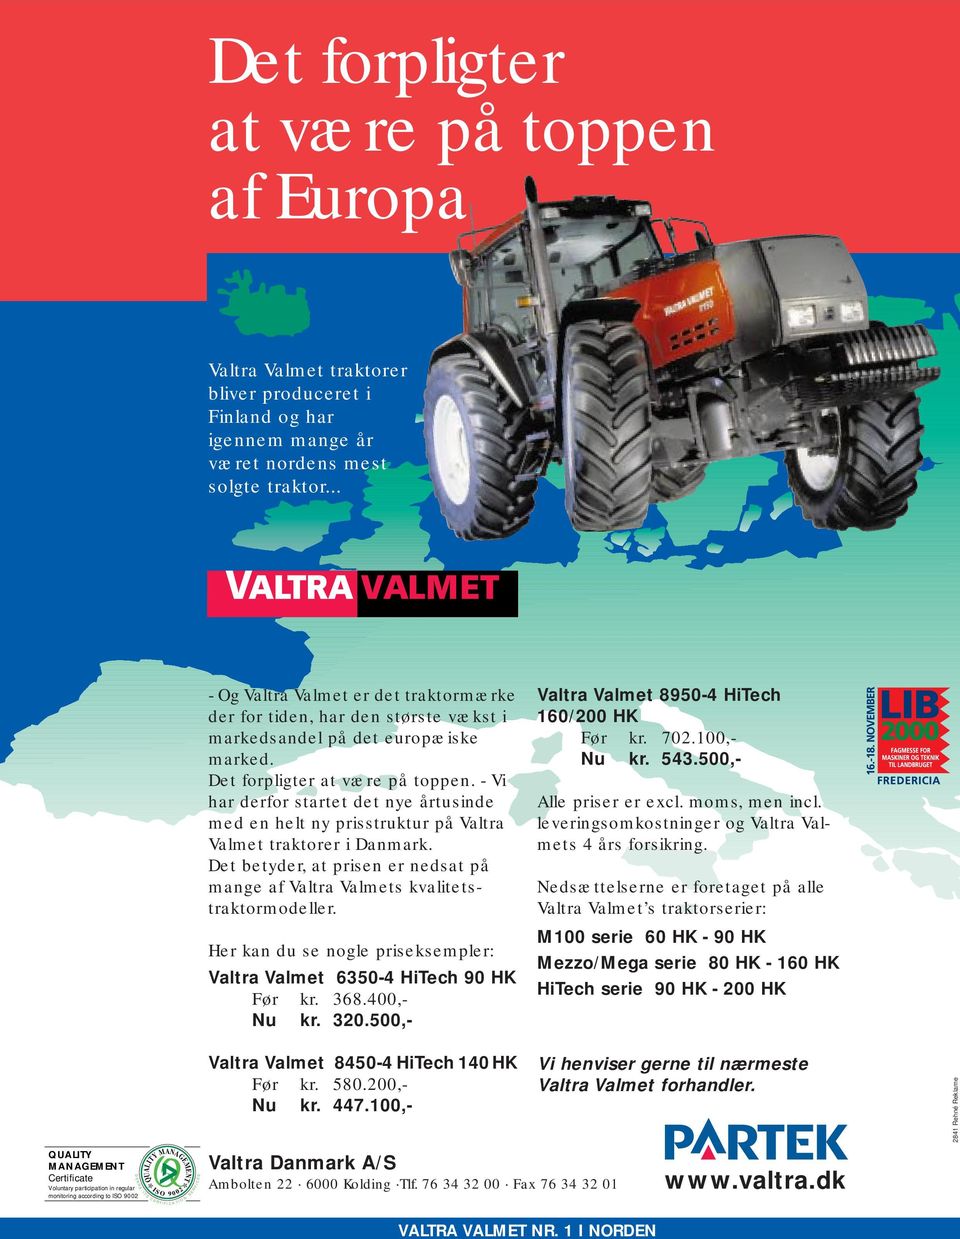 - Vi har derfor startet det nye årtusinde med en helt ny prisstruktur på Valtra Valmet traktorer i Danmark. Det betyder, at prisen er nedsat på mange af Valtra Valmets kvalitetstraktormodeller.